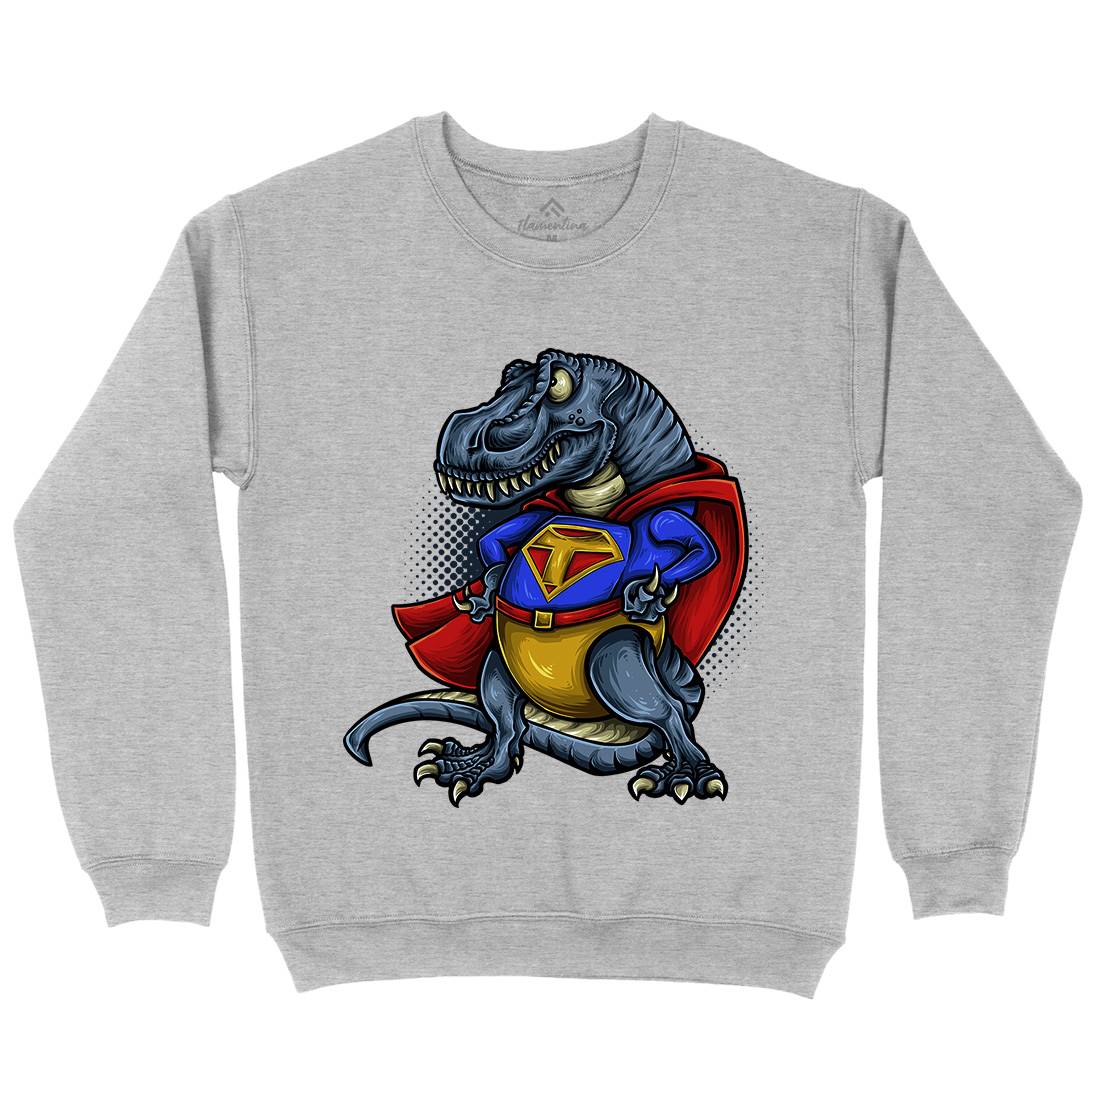 Super T-Rex Kids Crew Neck Sweatshirt Animals A478